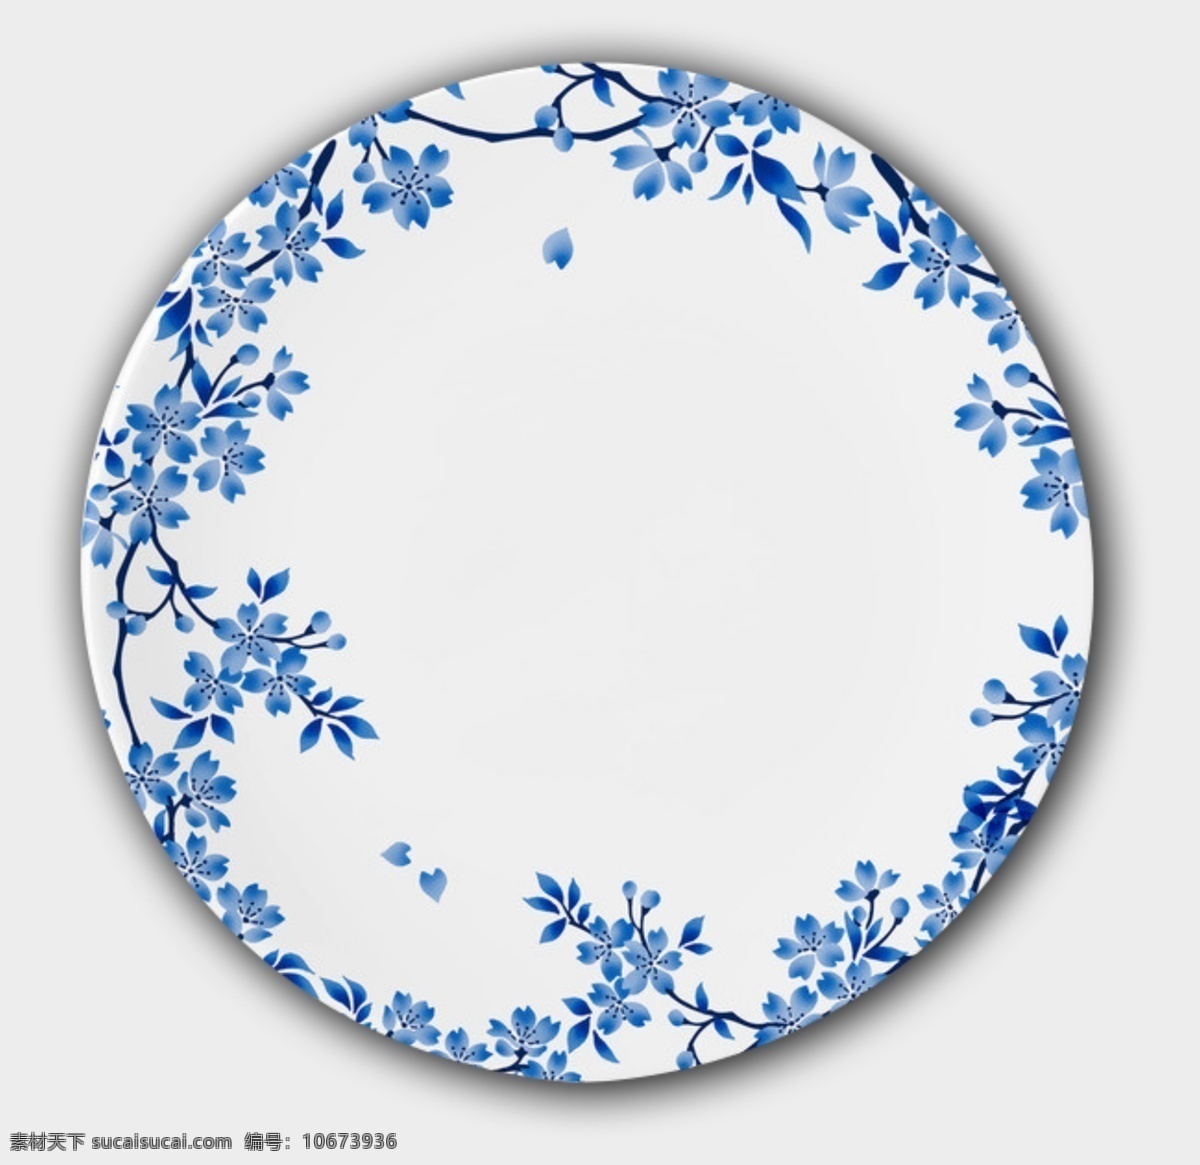 陶瓷盘子 盘子 陶瓷 花纹 中国风 优雅 陶瓷盘 素材图